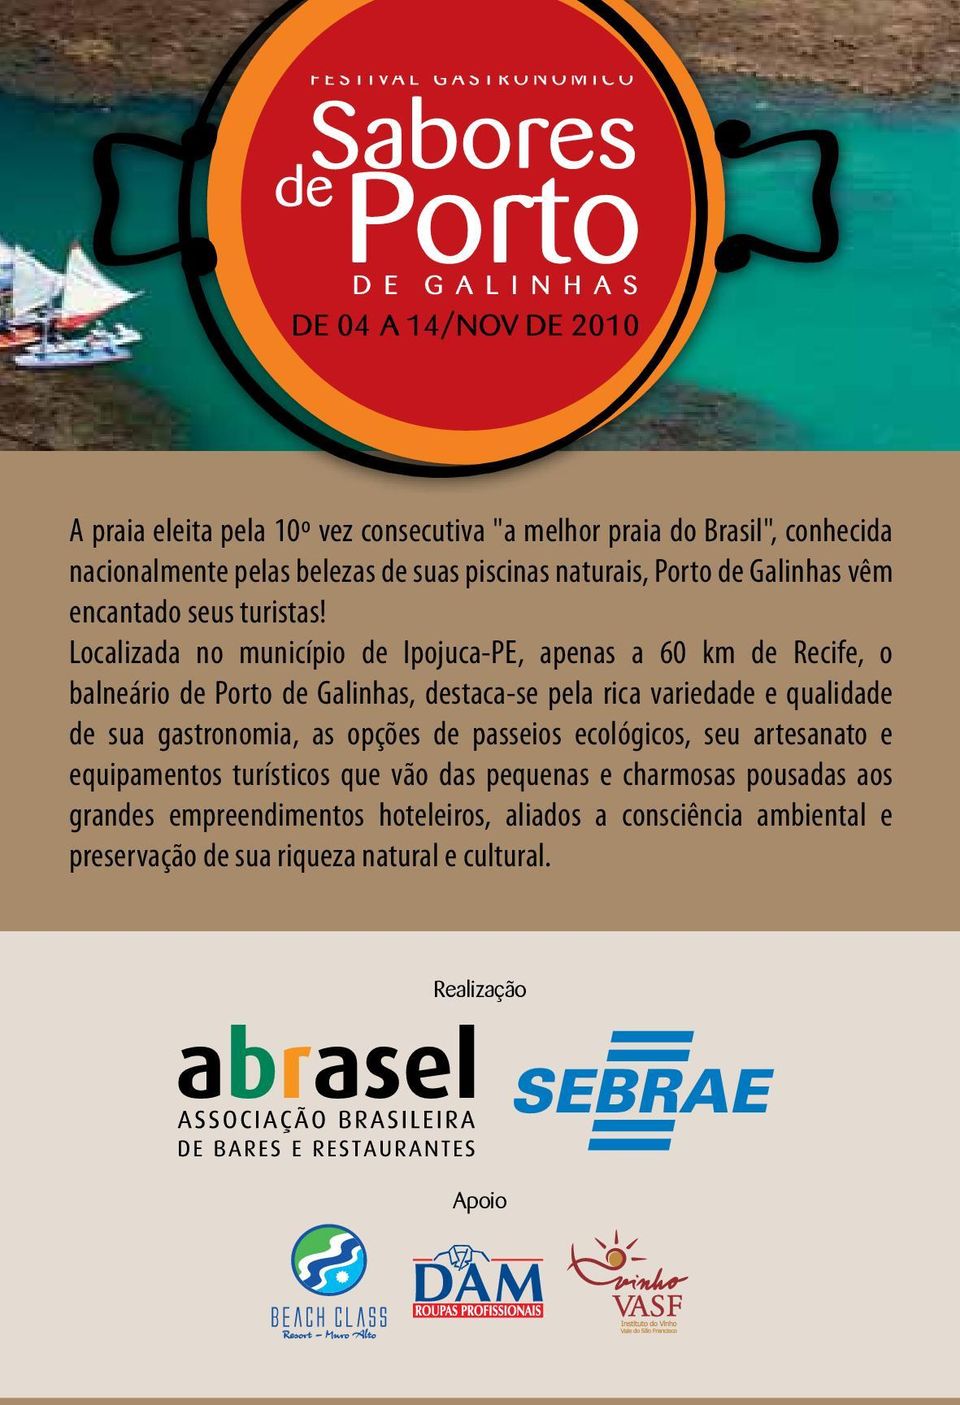 Localizada no município de Ipojuca-PE, apenas a 60 km de Recife, o balneário de Porto de Galinhas, destaca-se pela rica variedade e qualidade de sua